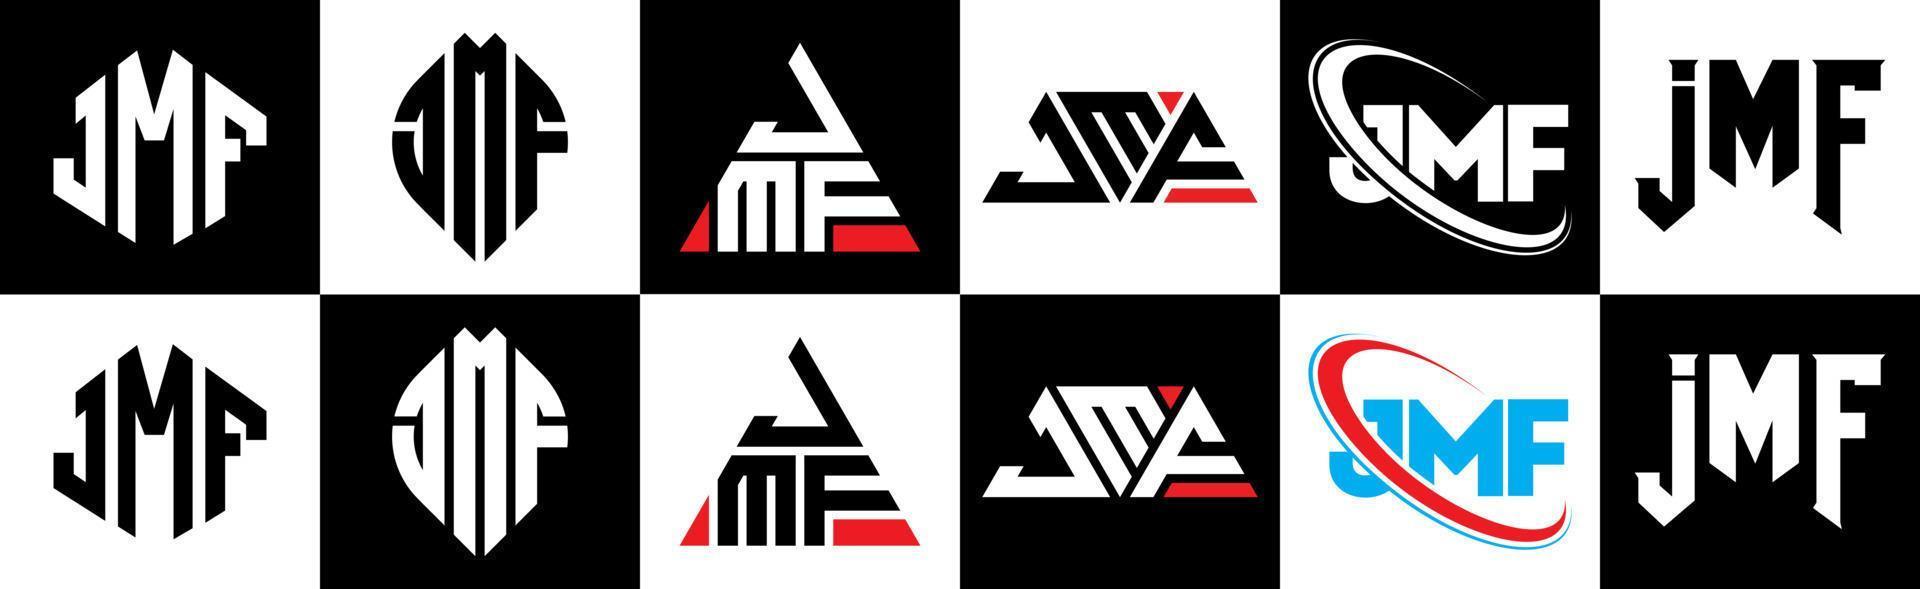 design de logotipo de carta jmf em seis estilos. jmf polígono, círculo, triângulo, hexágono, estilo plano e simples com logotipo de letra de variação de cor preto e branco definido em uma prancheta. jmf logotipo minimalista e clássico vetor